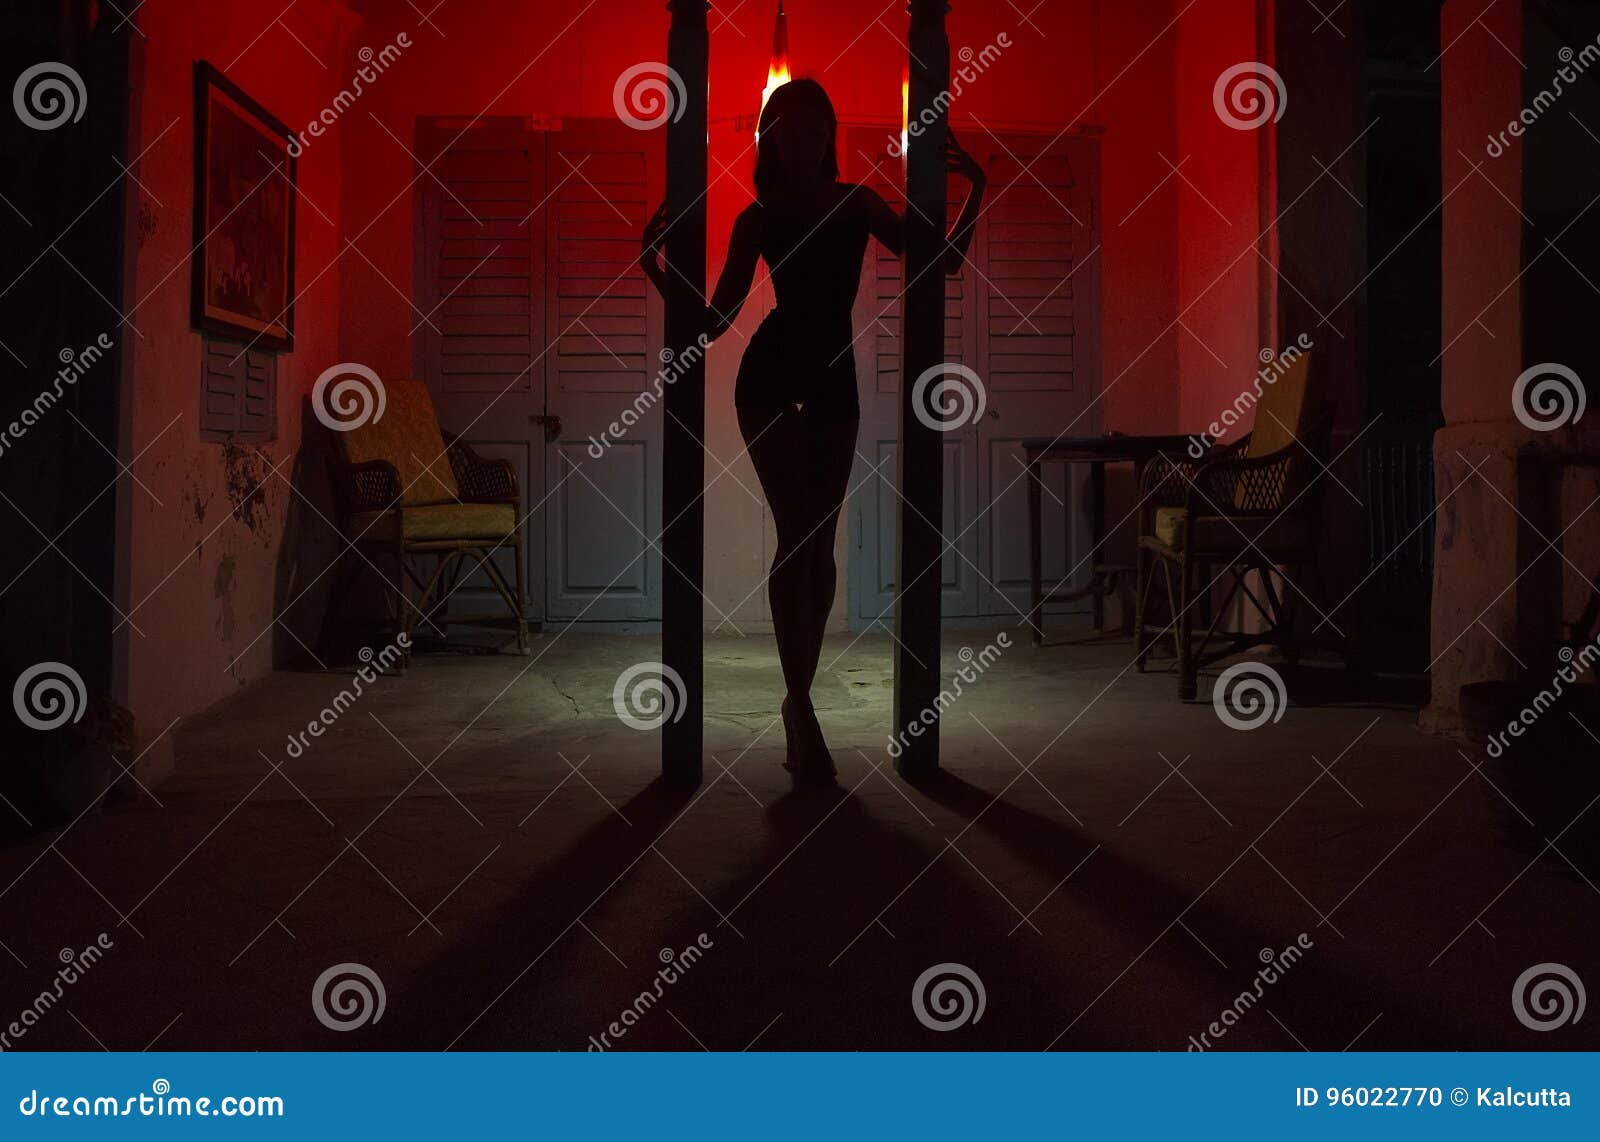 Сексуальные танцы силуэта женщины на гостинице Танцор женский s поляка. Сексуальные танцы силуэта женщины на гостинице Стриппер танцора поляка женский в ноче Чувственный красный свет, noir стиль Красивая девушка танцев с сексуальным телом Горячий эротичный частный танец, стриптиз